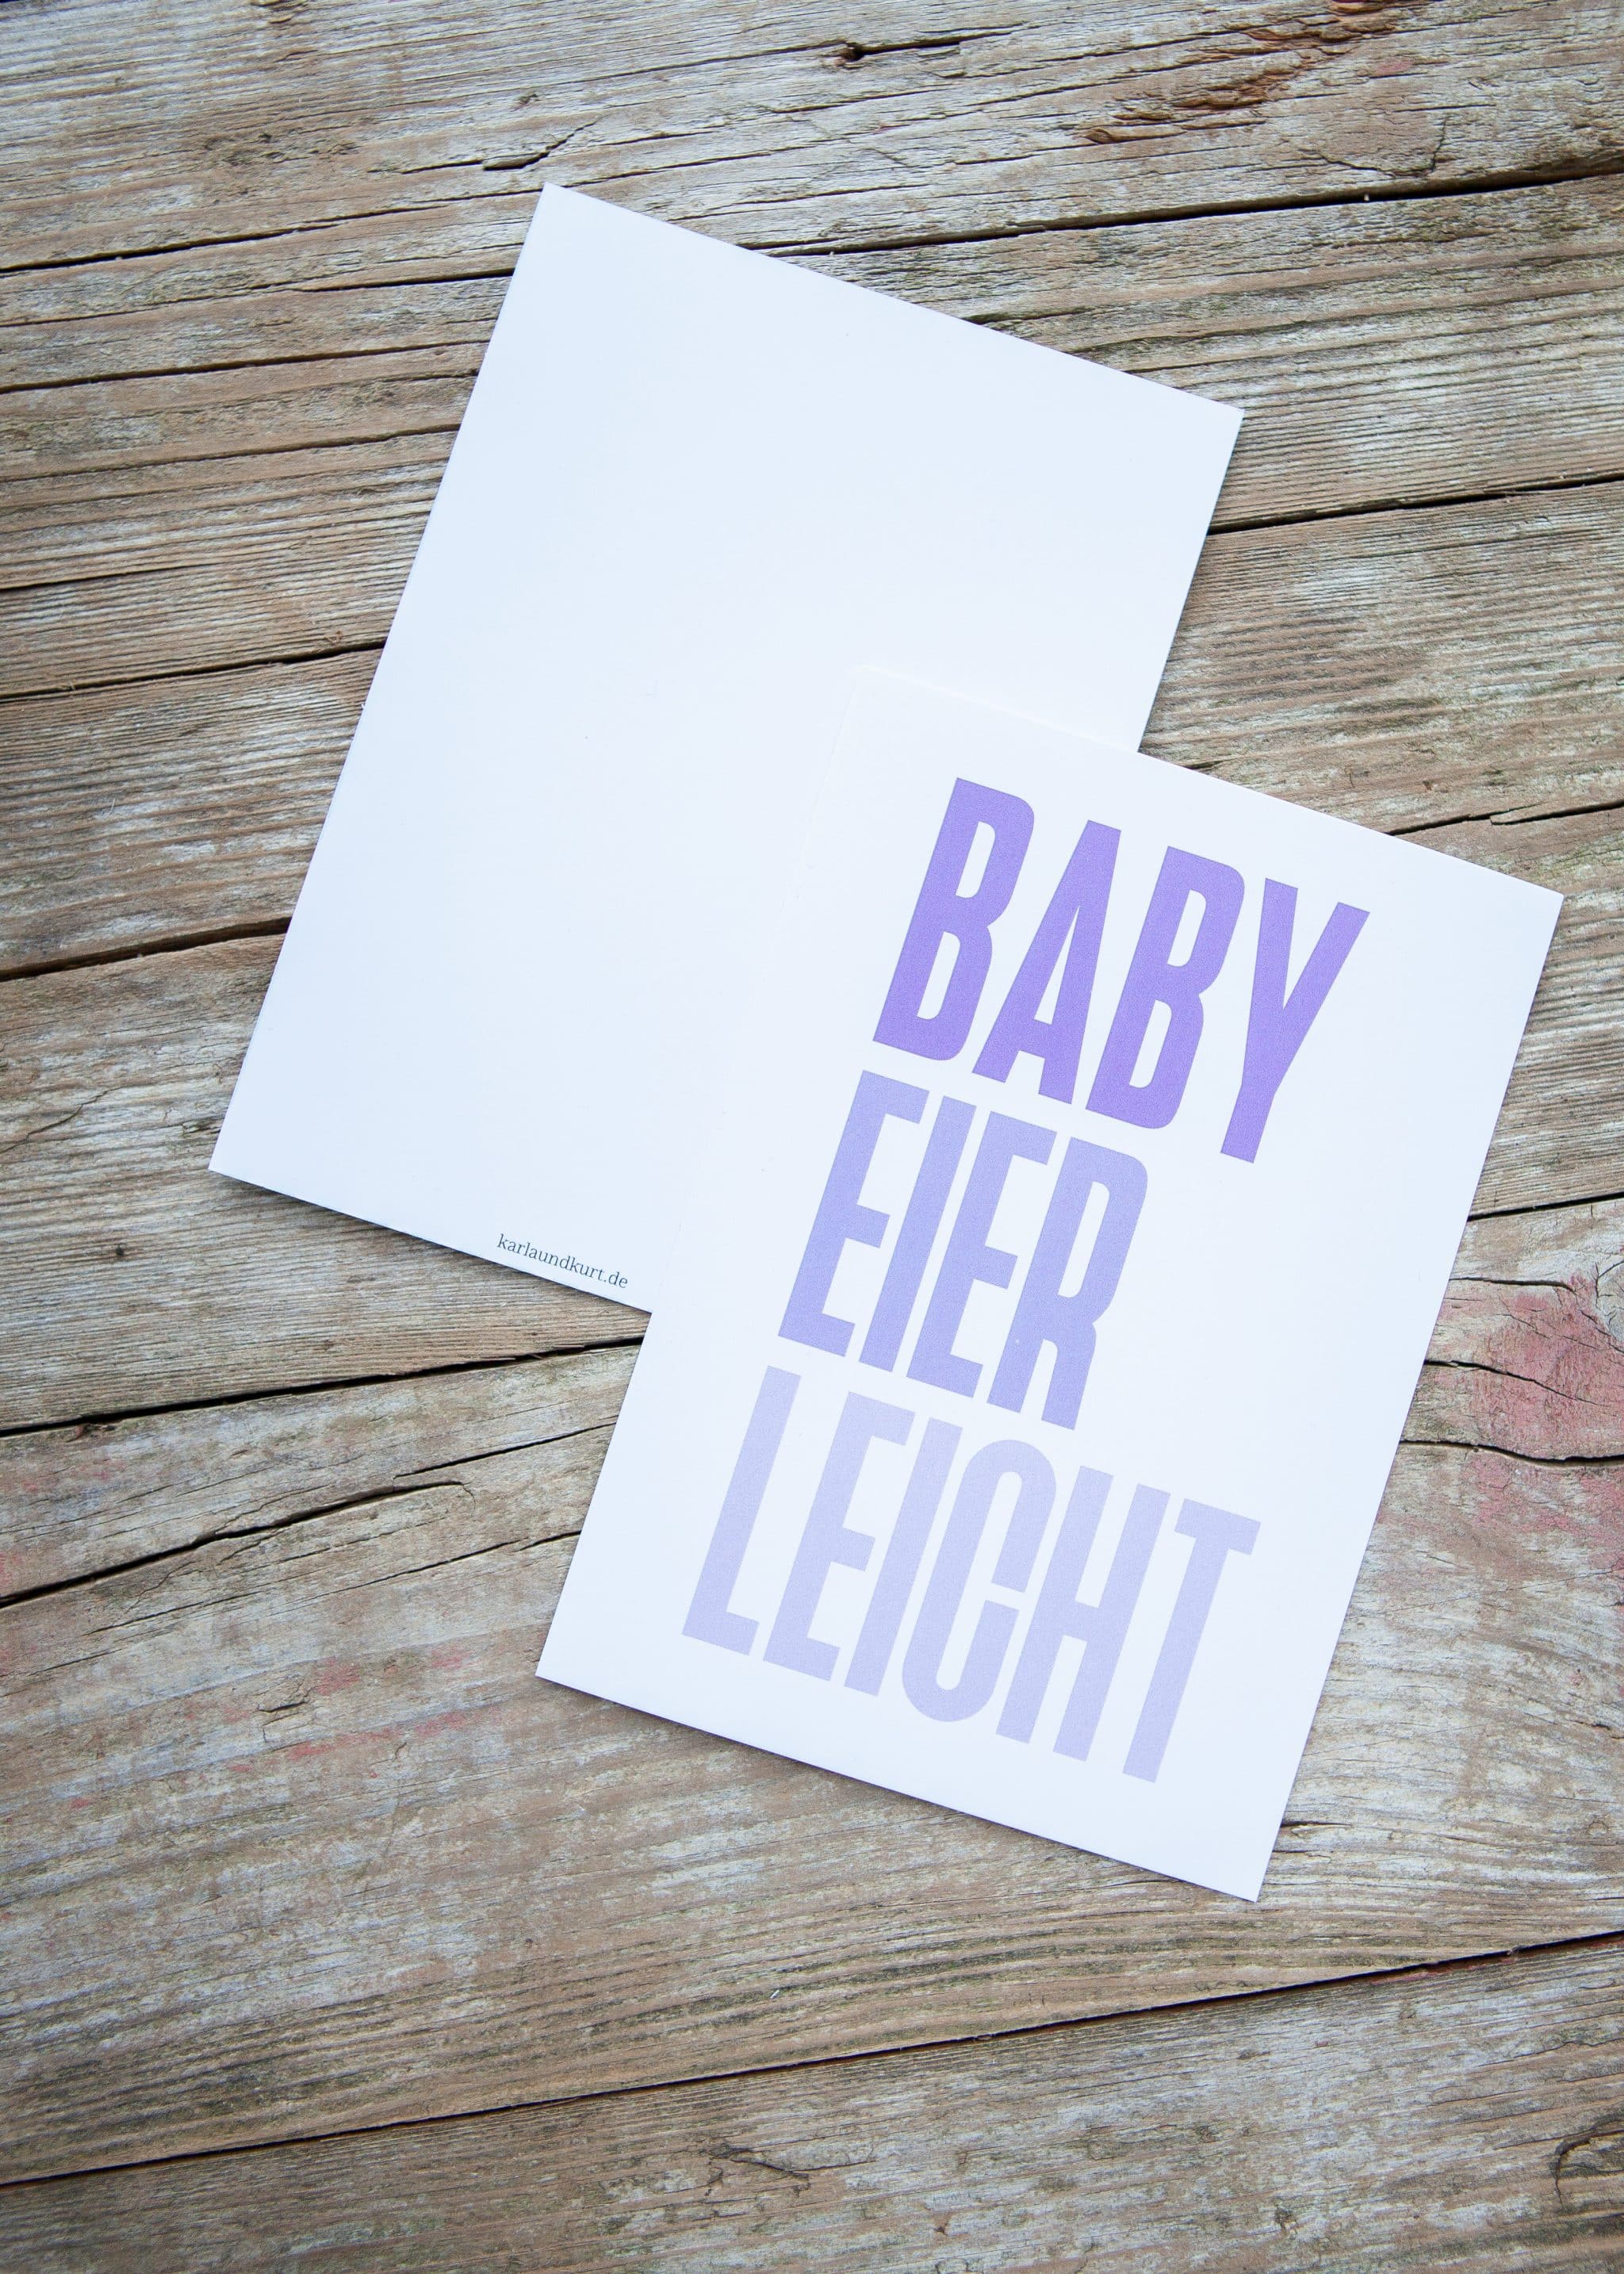 Postkarte Babyeierleicht